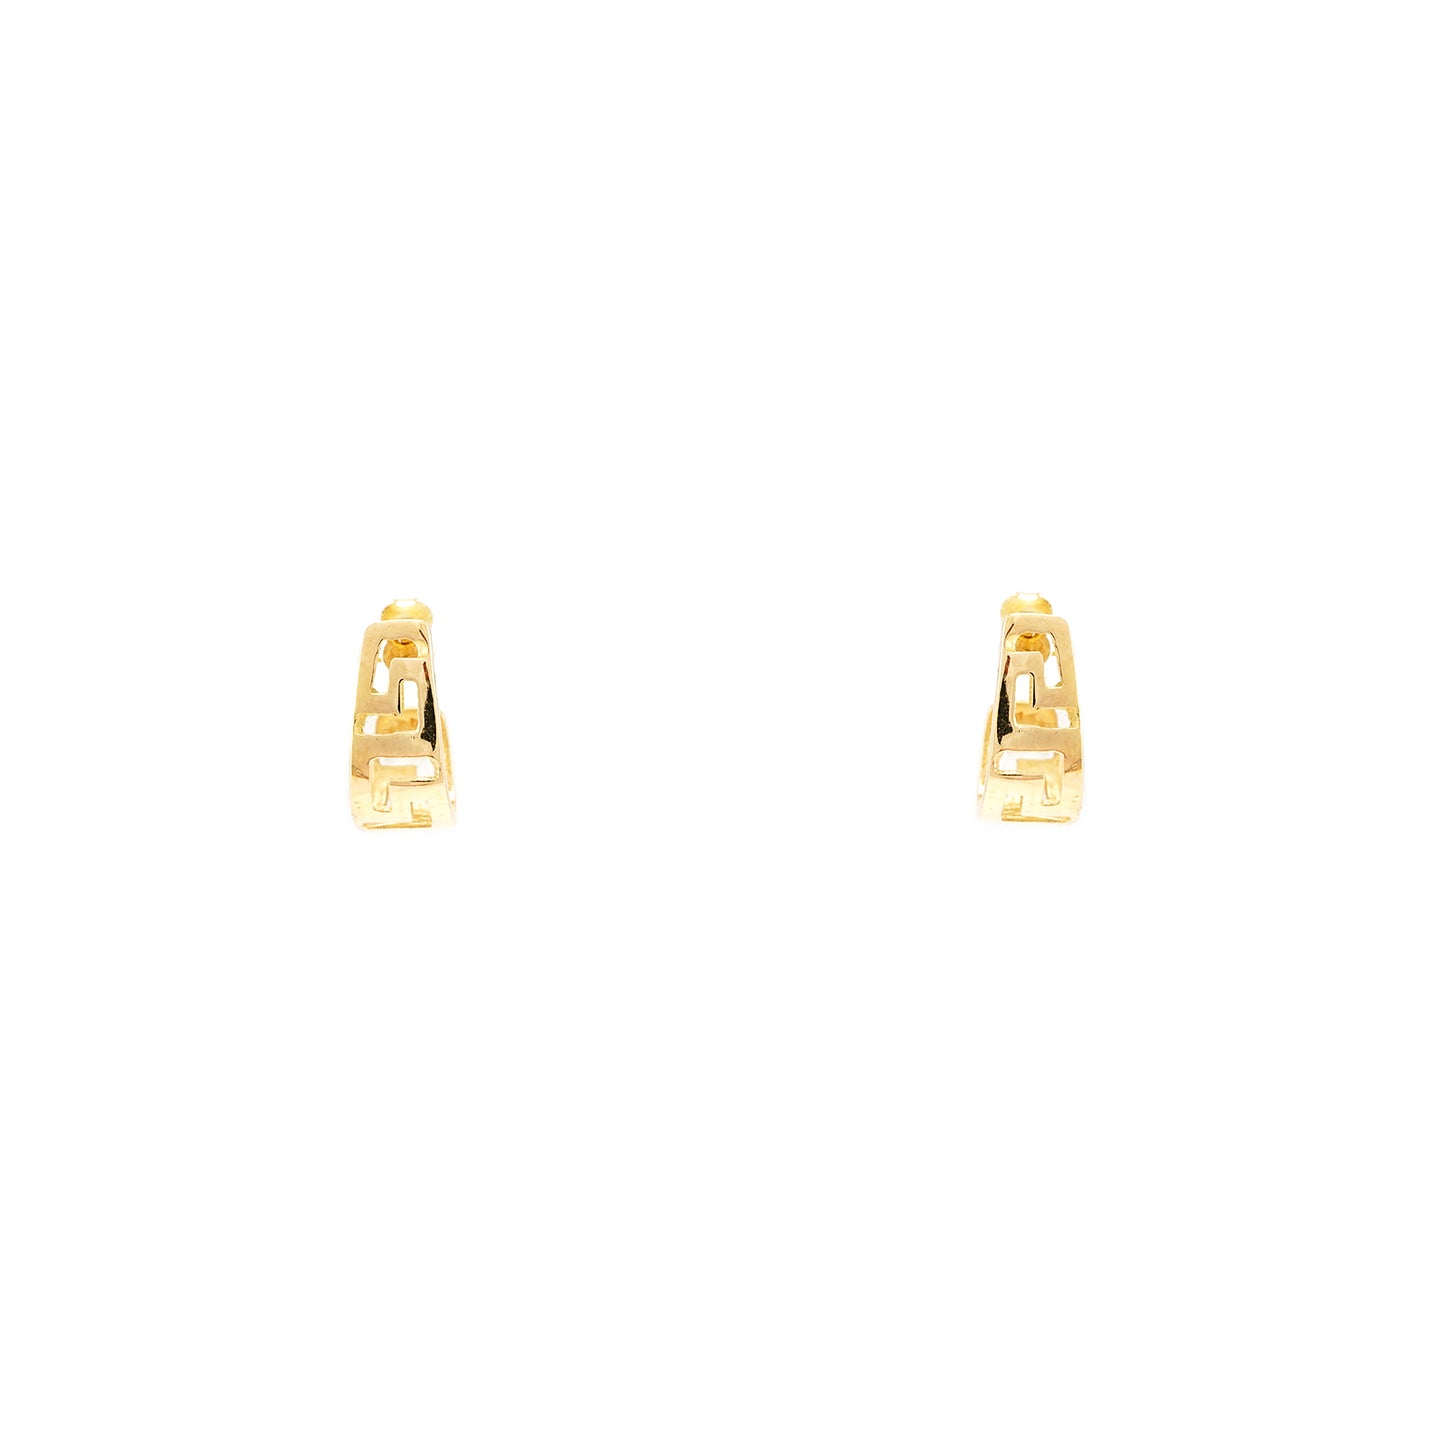 Stud earrings Greek pattern yellow gold 585 14K women's jewelry gold earrings hoop earrings